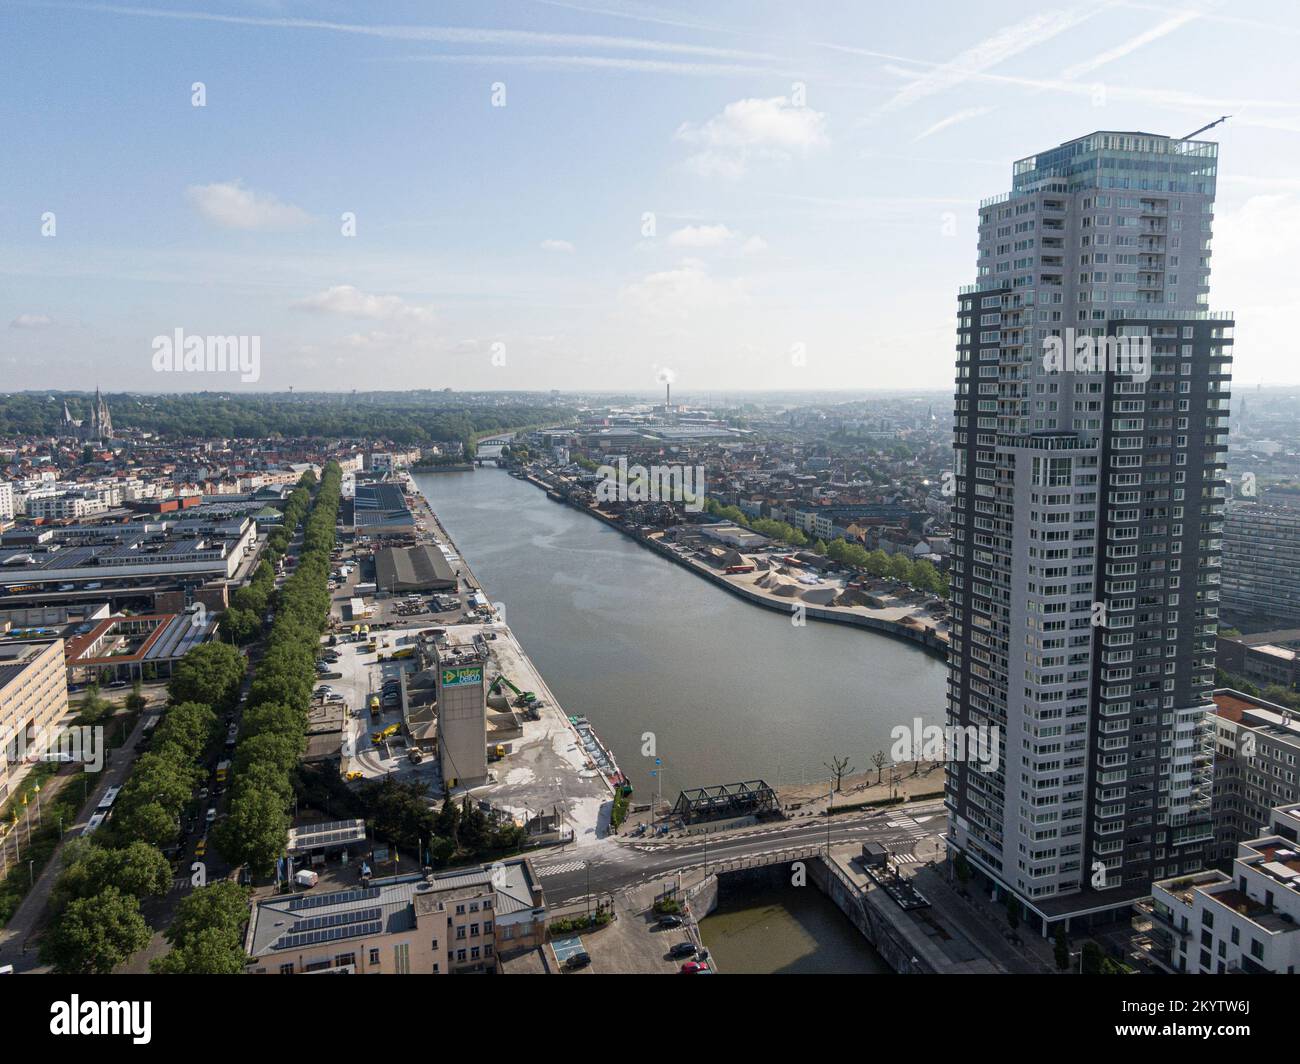 Bruxelles, Belgique - 12 mai 2022: Paysage urbain de la ville de Bruxelles, gratte-ciel immeuble d'appartements avec la rivière Senne traversant Bruxelles et à Banque D'Images